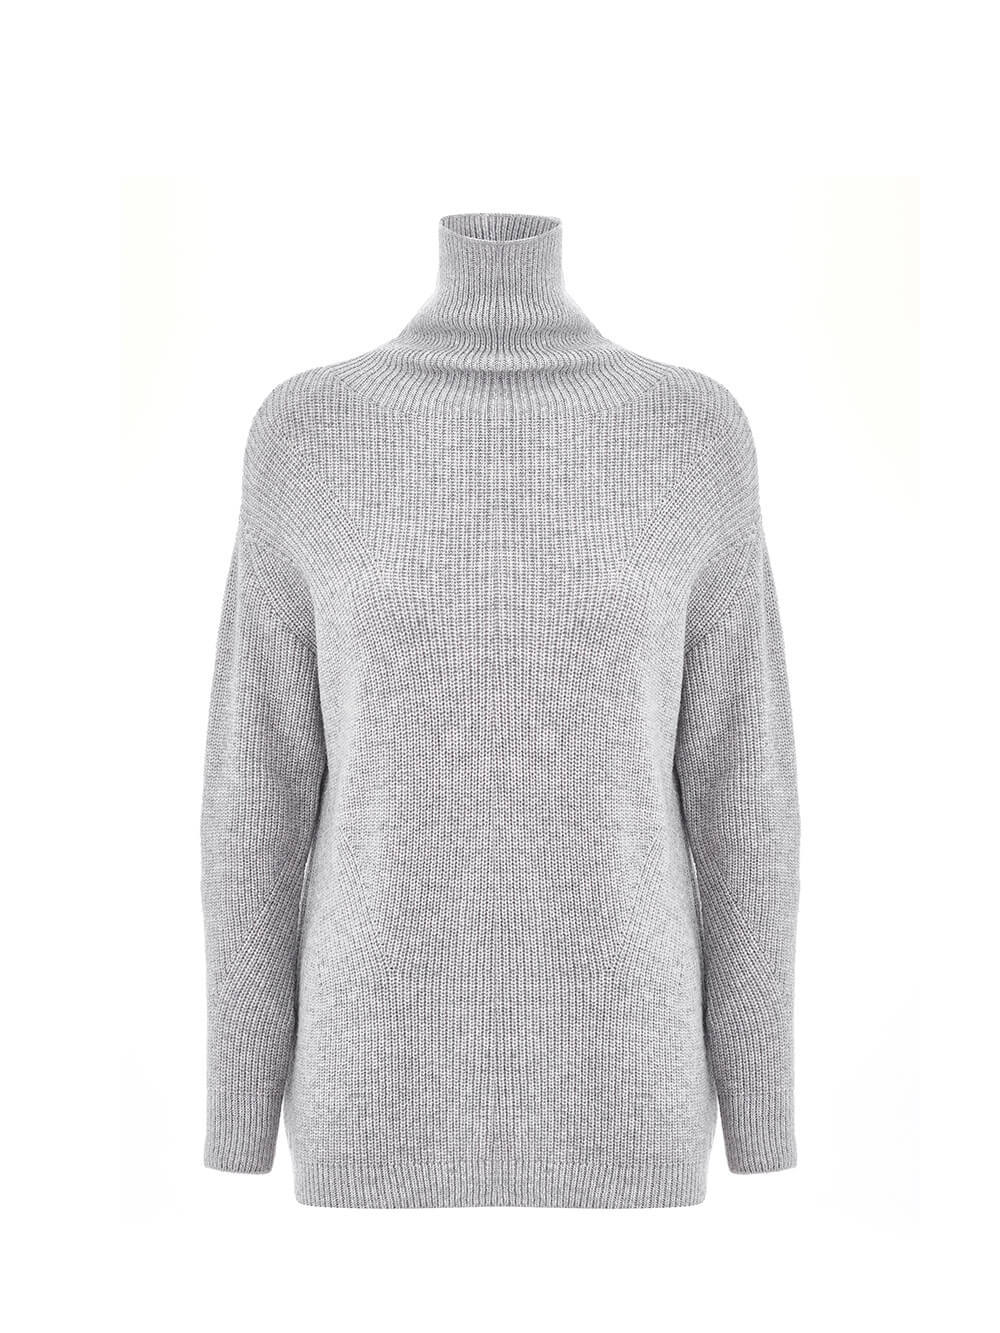 Женский свитер светло-серого цвета из шерсти и кашемира - фото 1